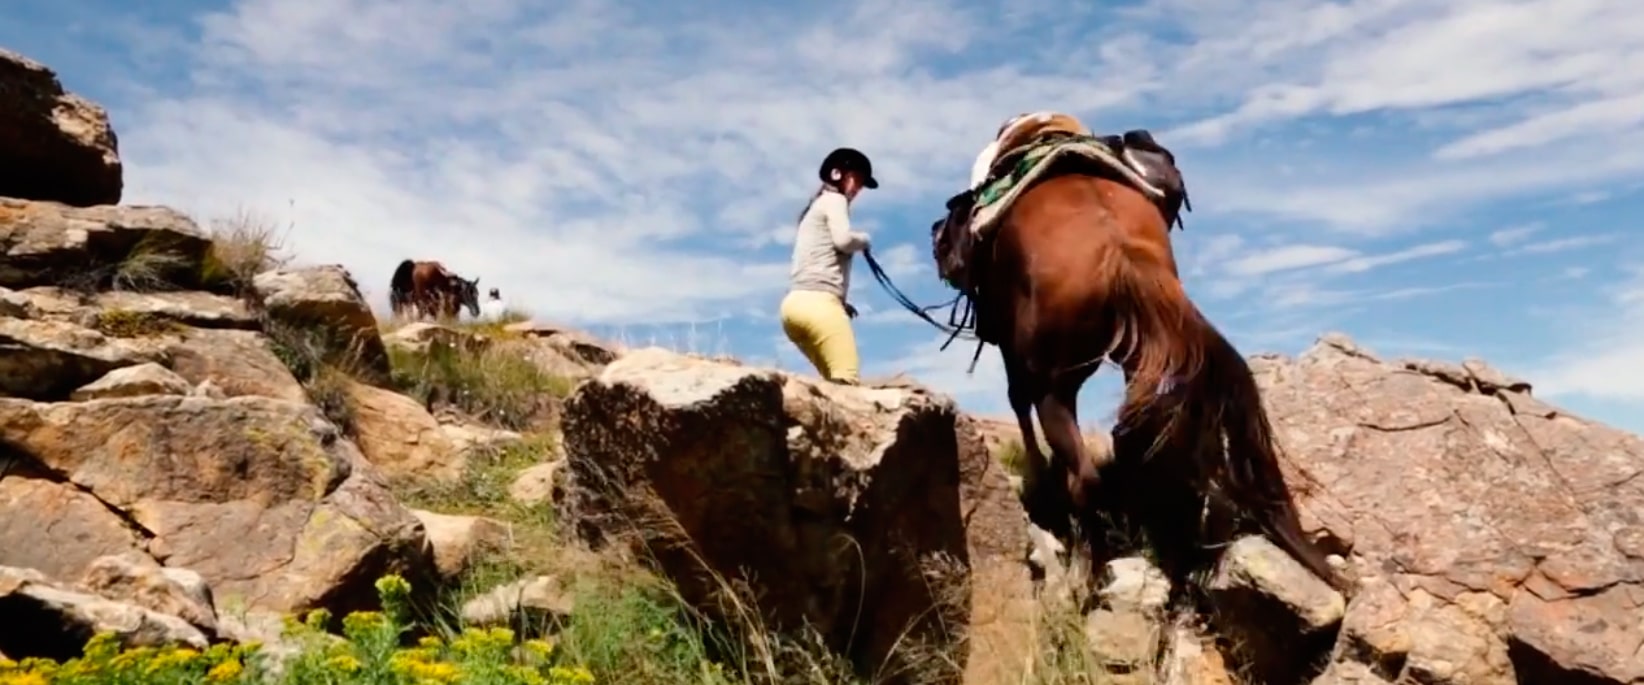 Ruta a caballo en Lesotho